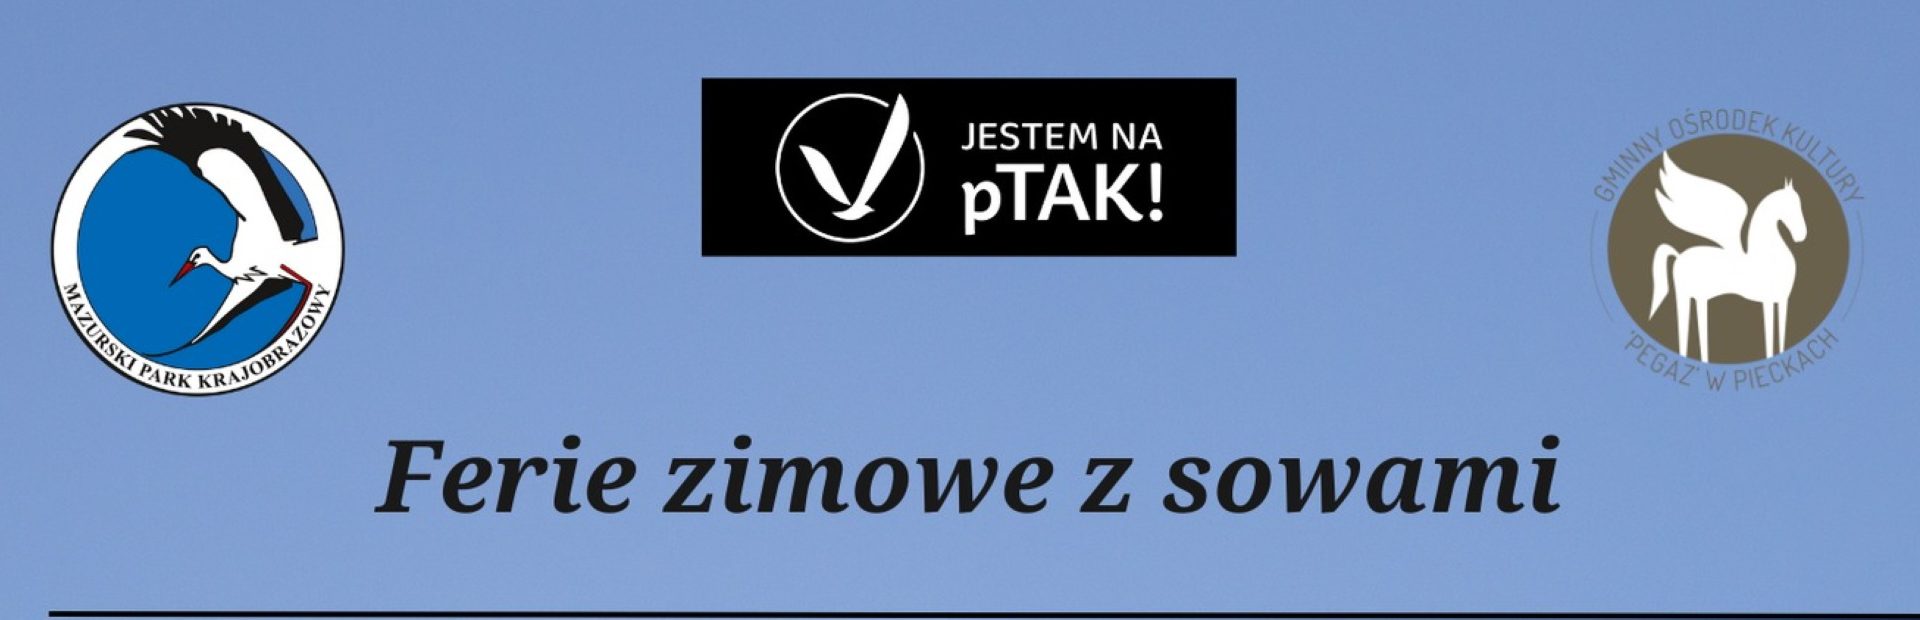 Plakat zapraszający w dniach od 21 stycznia do 4 lutego 2023 r. do miejscowości Piecki na ferie zimowe z sowami - Mazurski Park Krajobrazowy Piecki 2023.